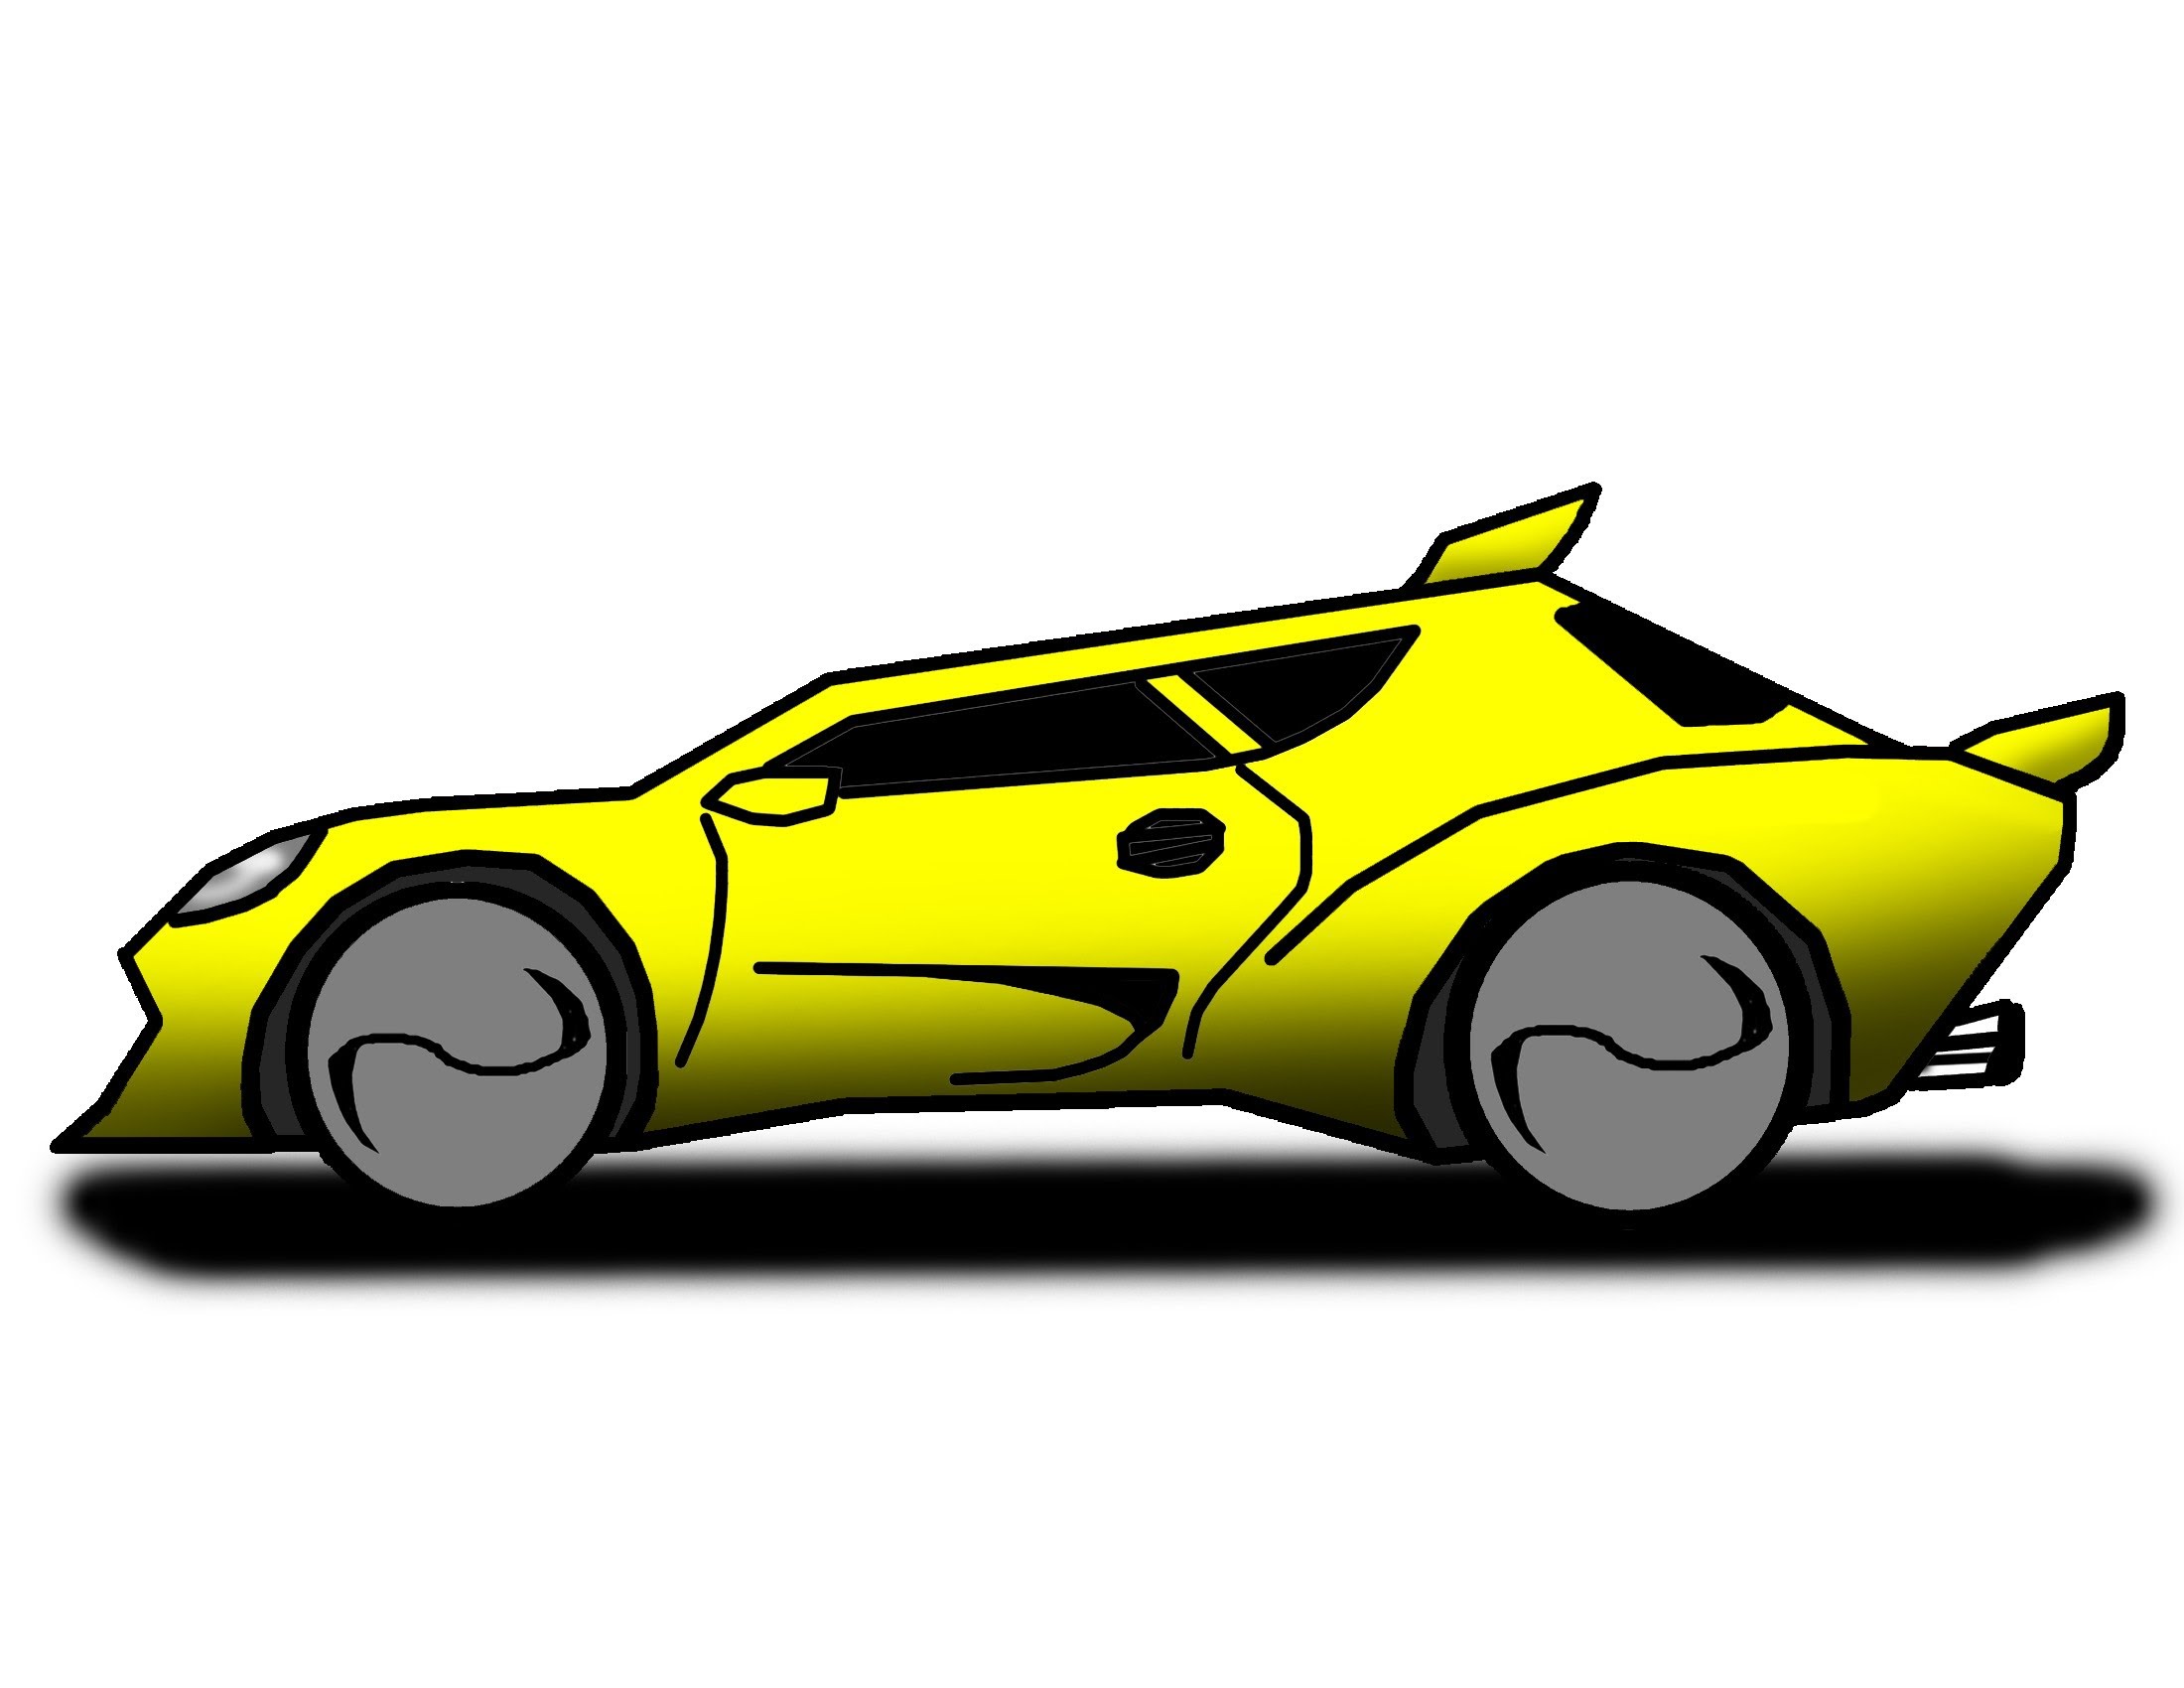 Cartoon Wallpaper: Cartoon Race Car Wallpaper Picture with High ... -  ClipArt Best - ClipArt Best